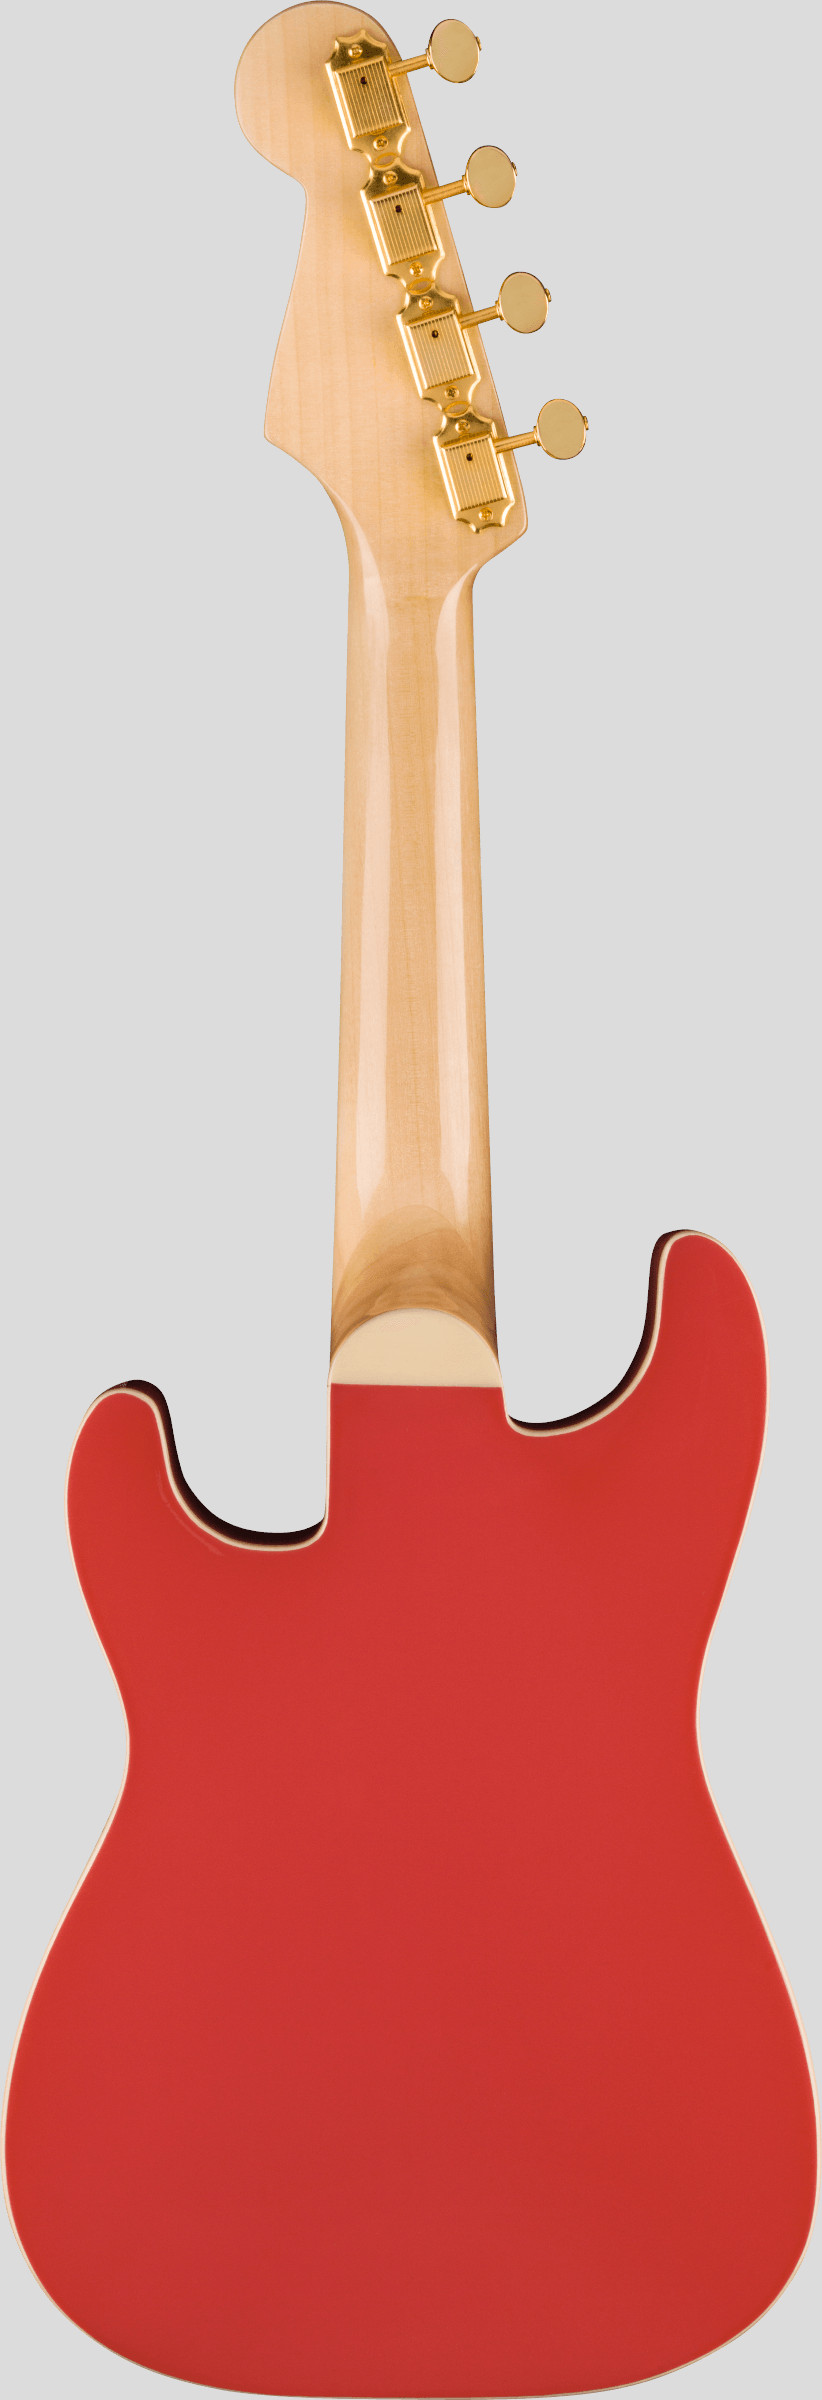 Fender Limited Edition Fullerton Stratocaster Concert Ukulele Fiesta Red 2